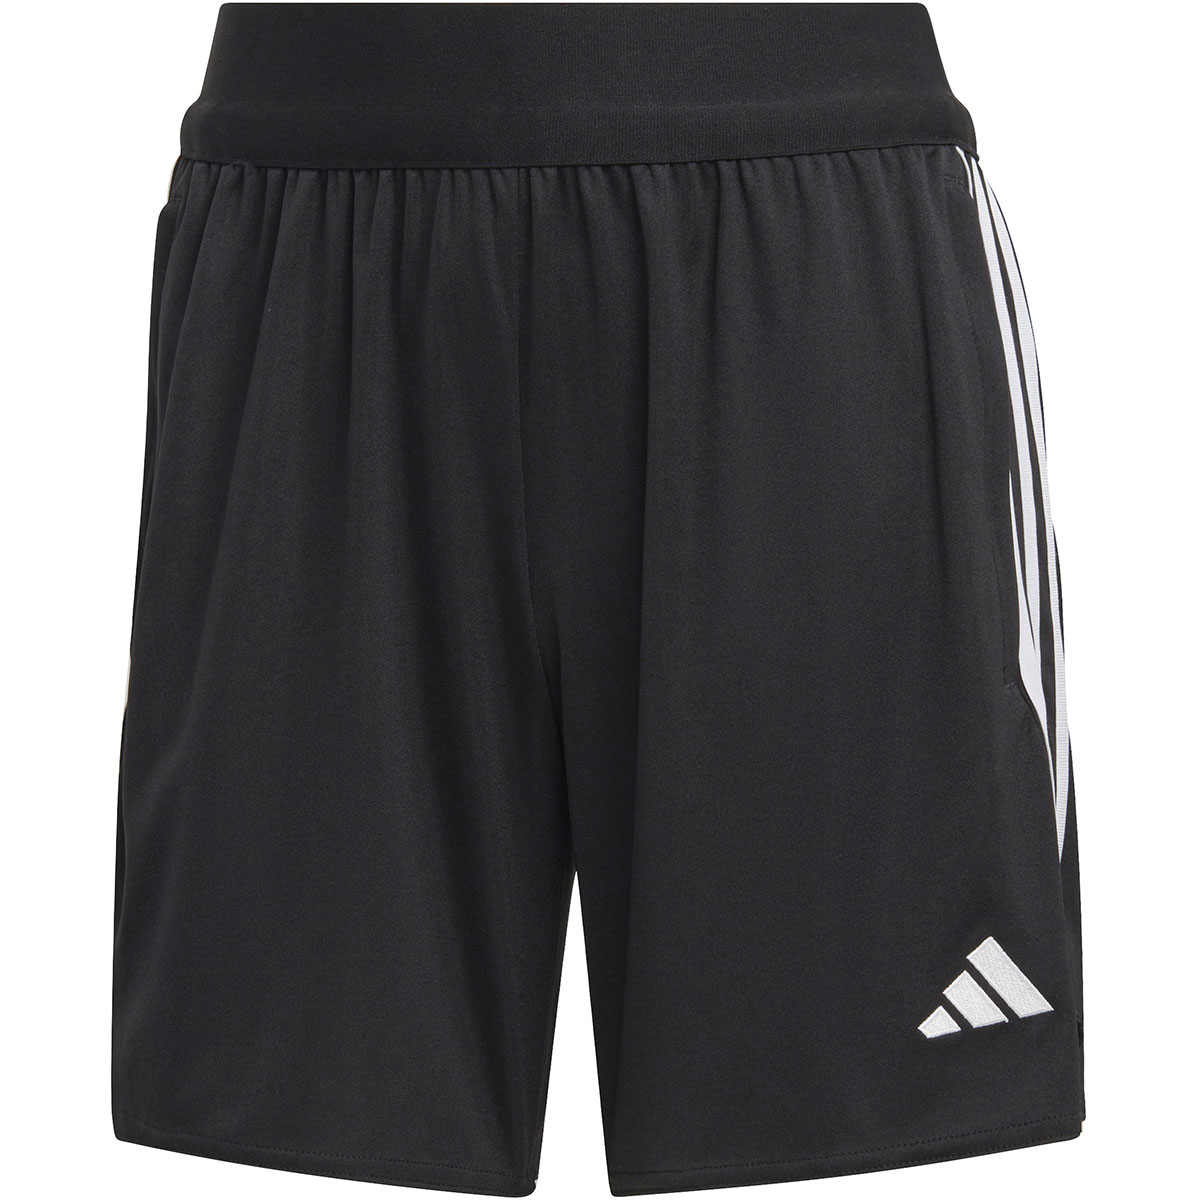 Adidas Damen Training Shorts Tiro 23 schwarz